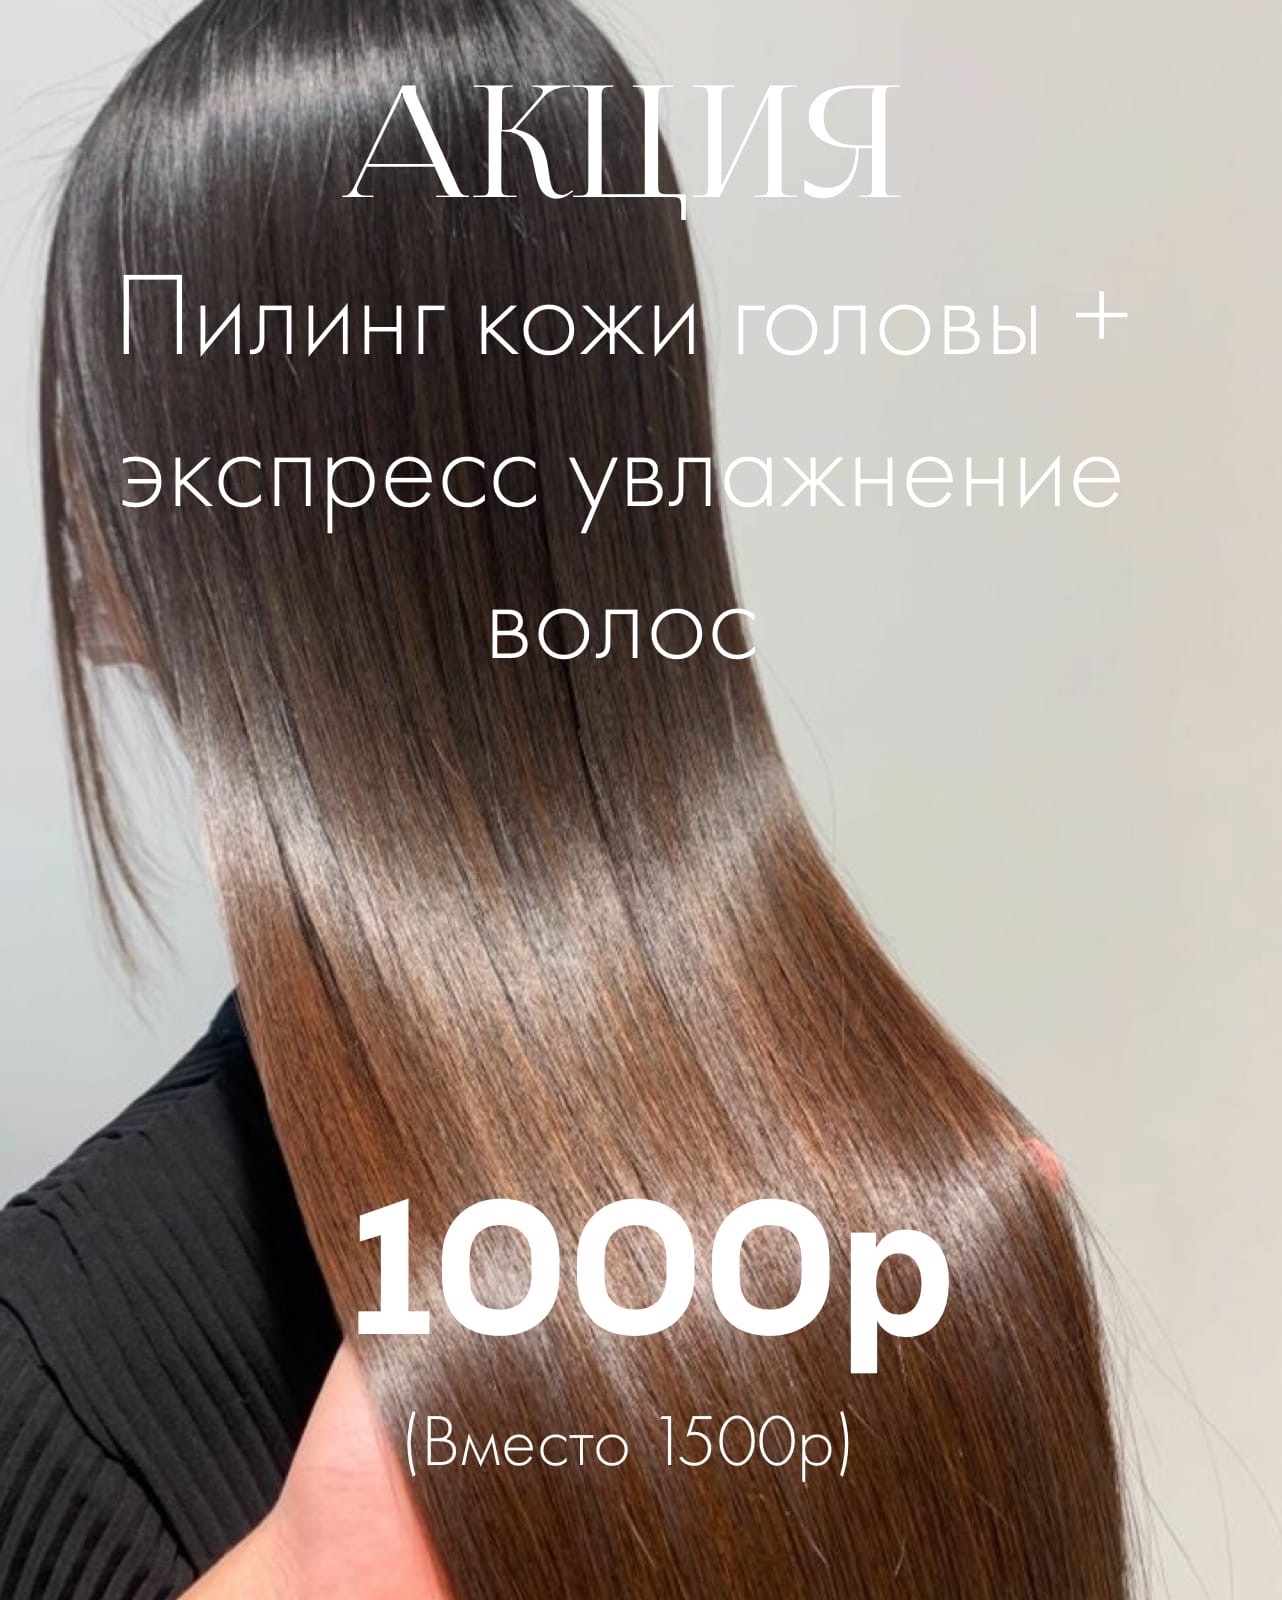 Акция - Пилинг кожи головы + экспресс увлажнение волос в Кирове